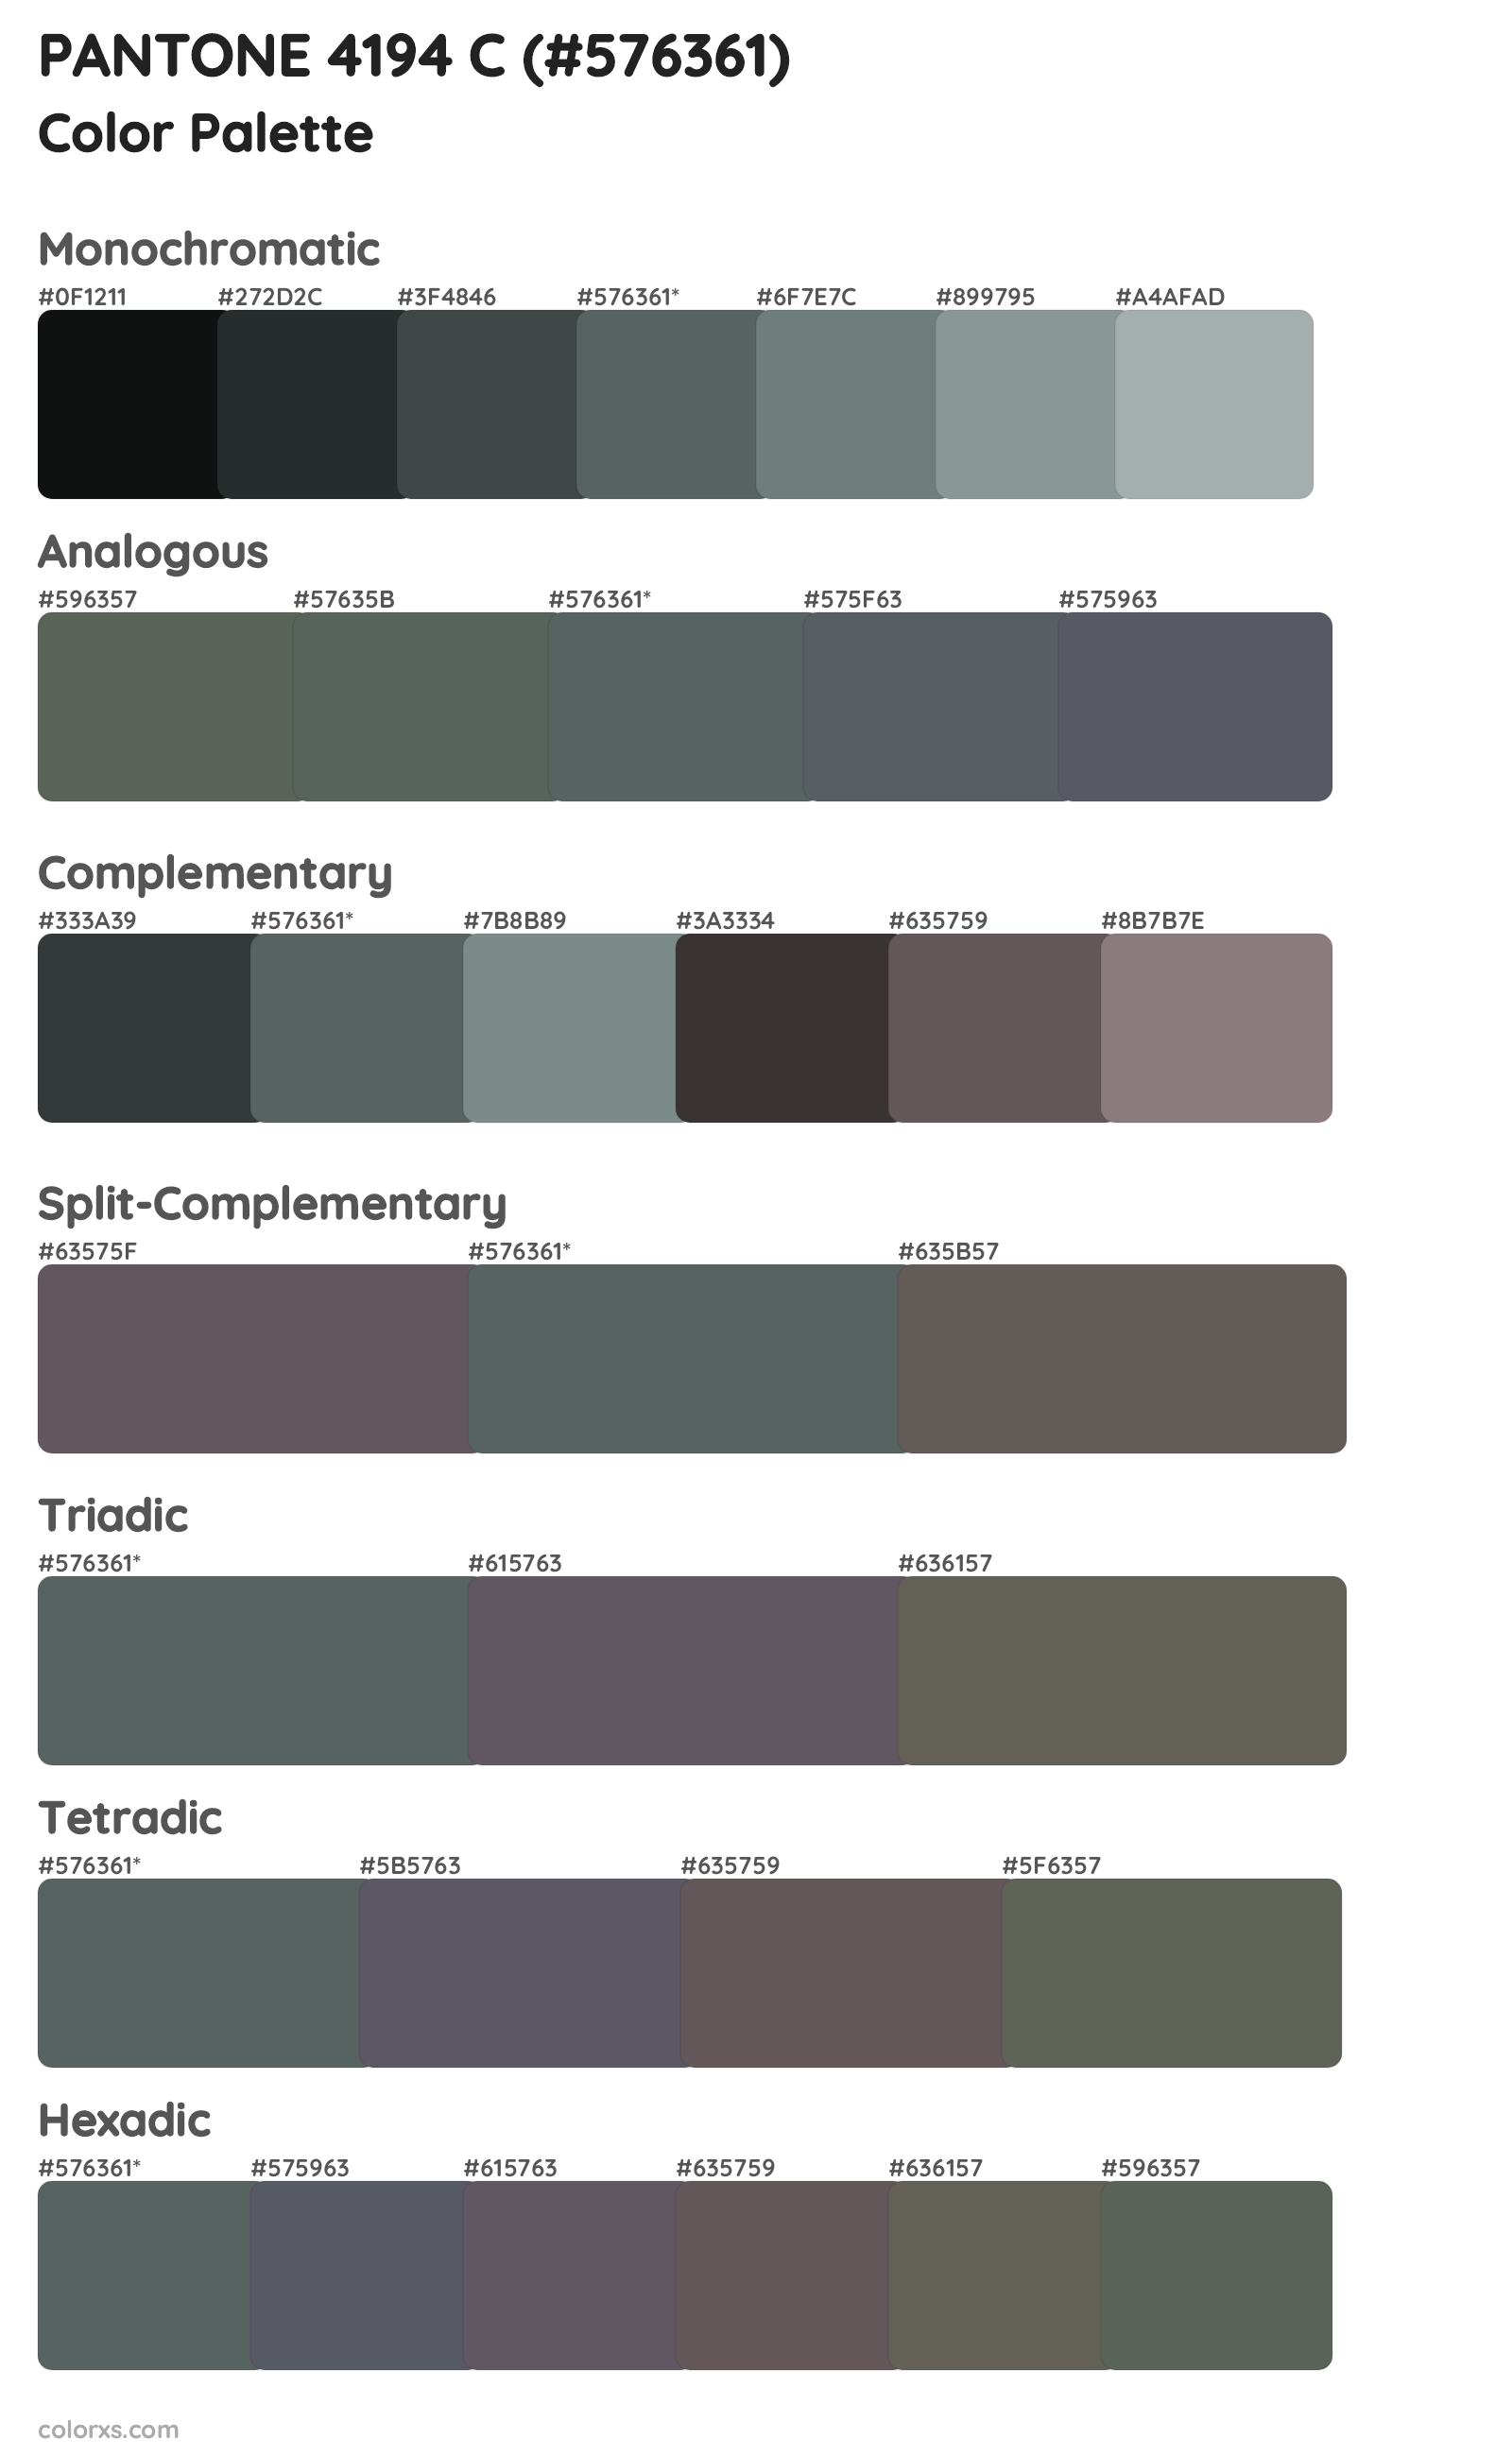 PANTONE 4194 C Color Scheme Palettes